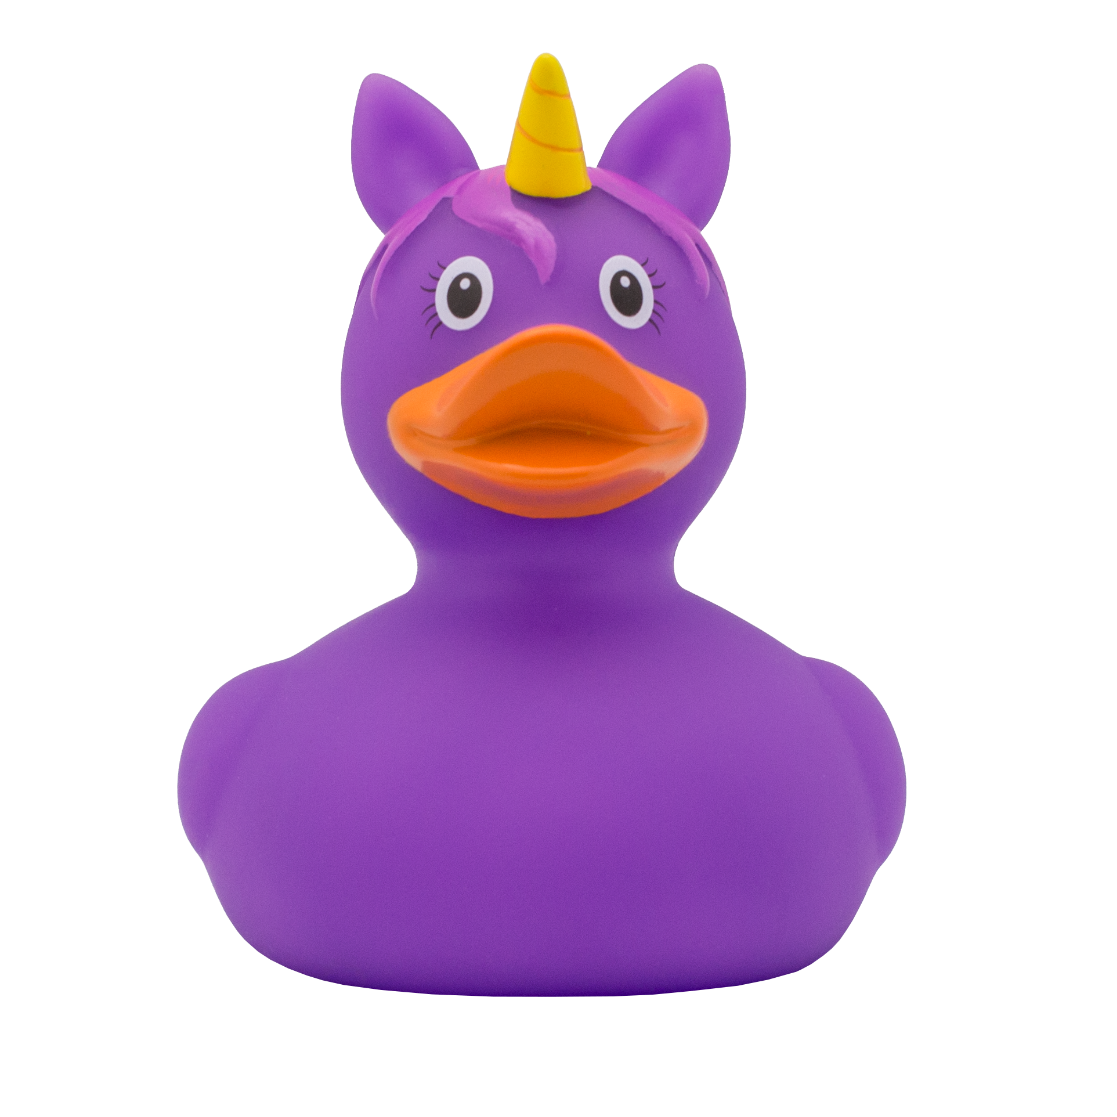 Purple Licorne Duck.